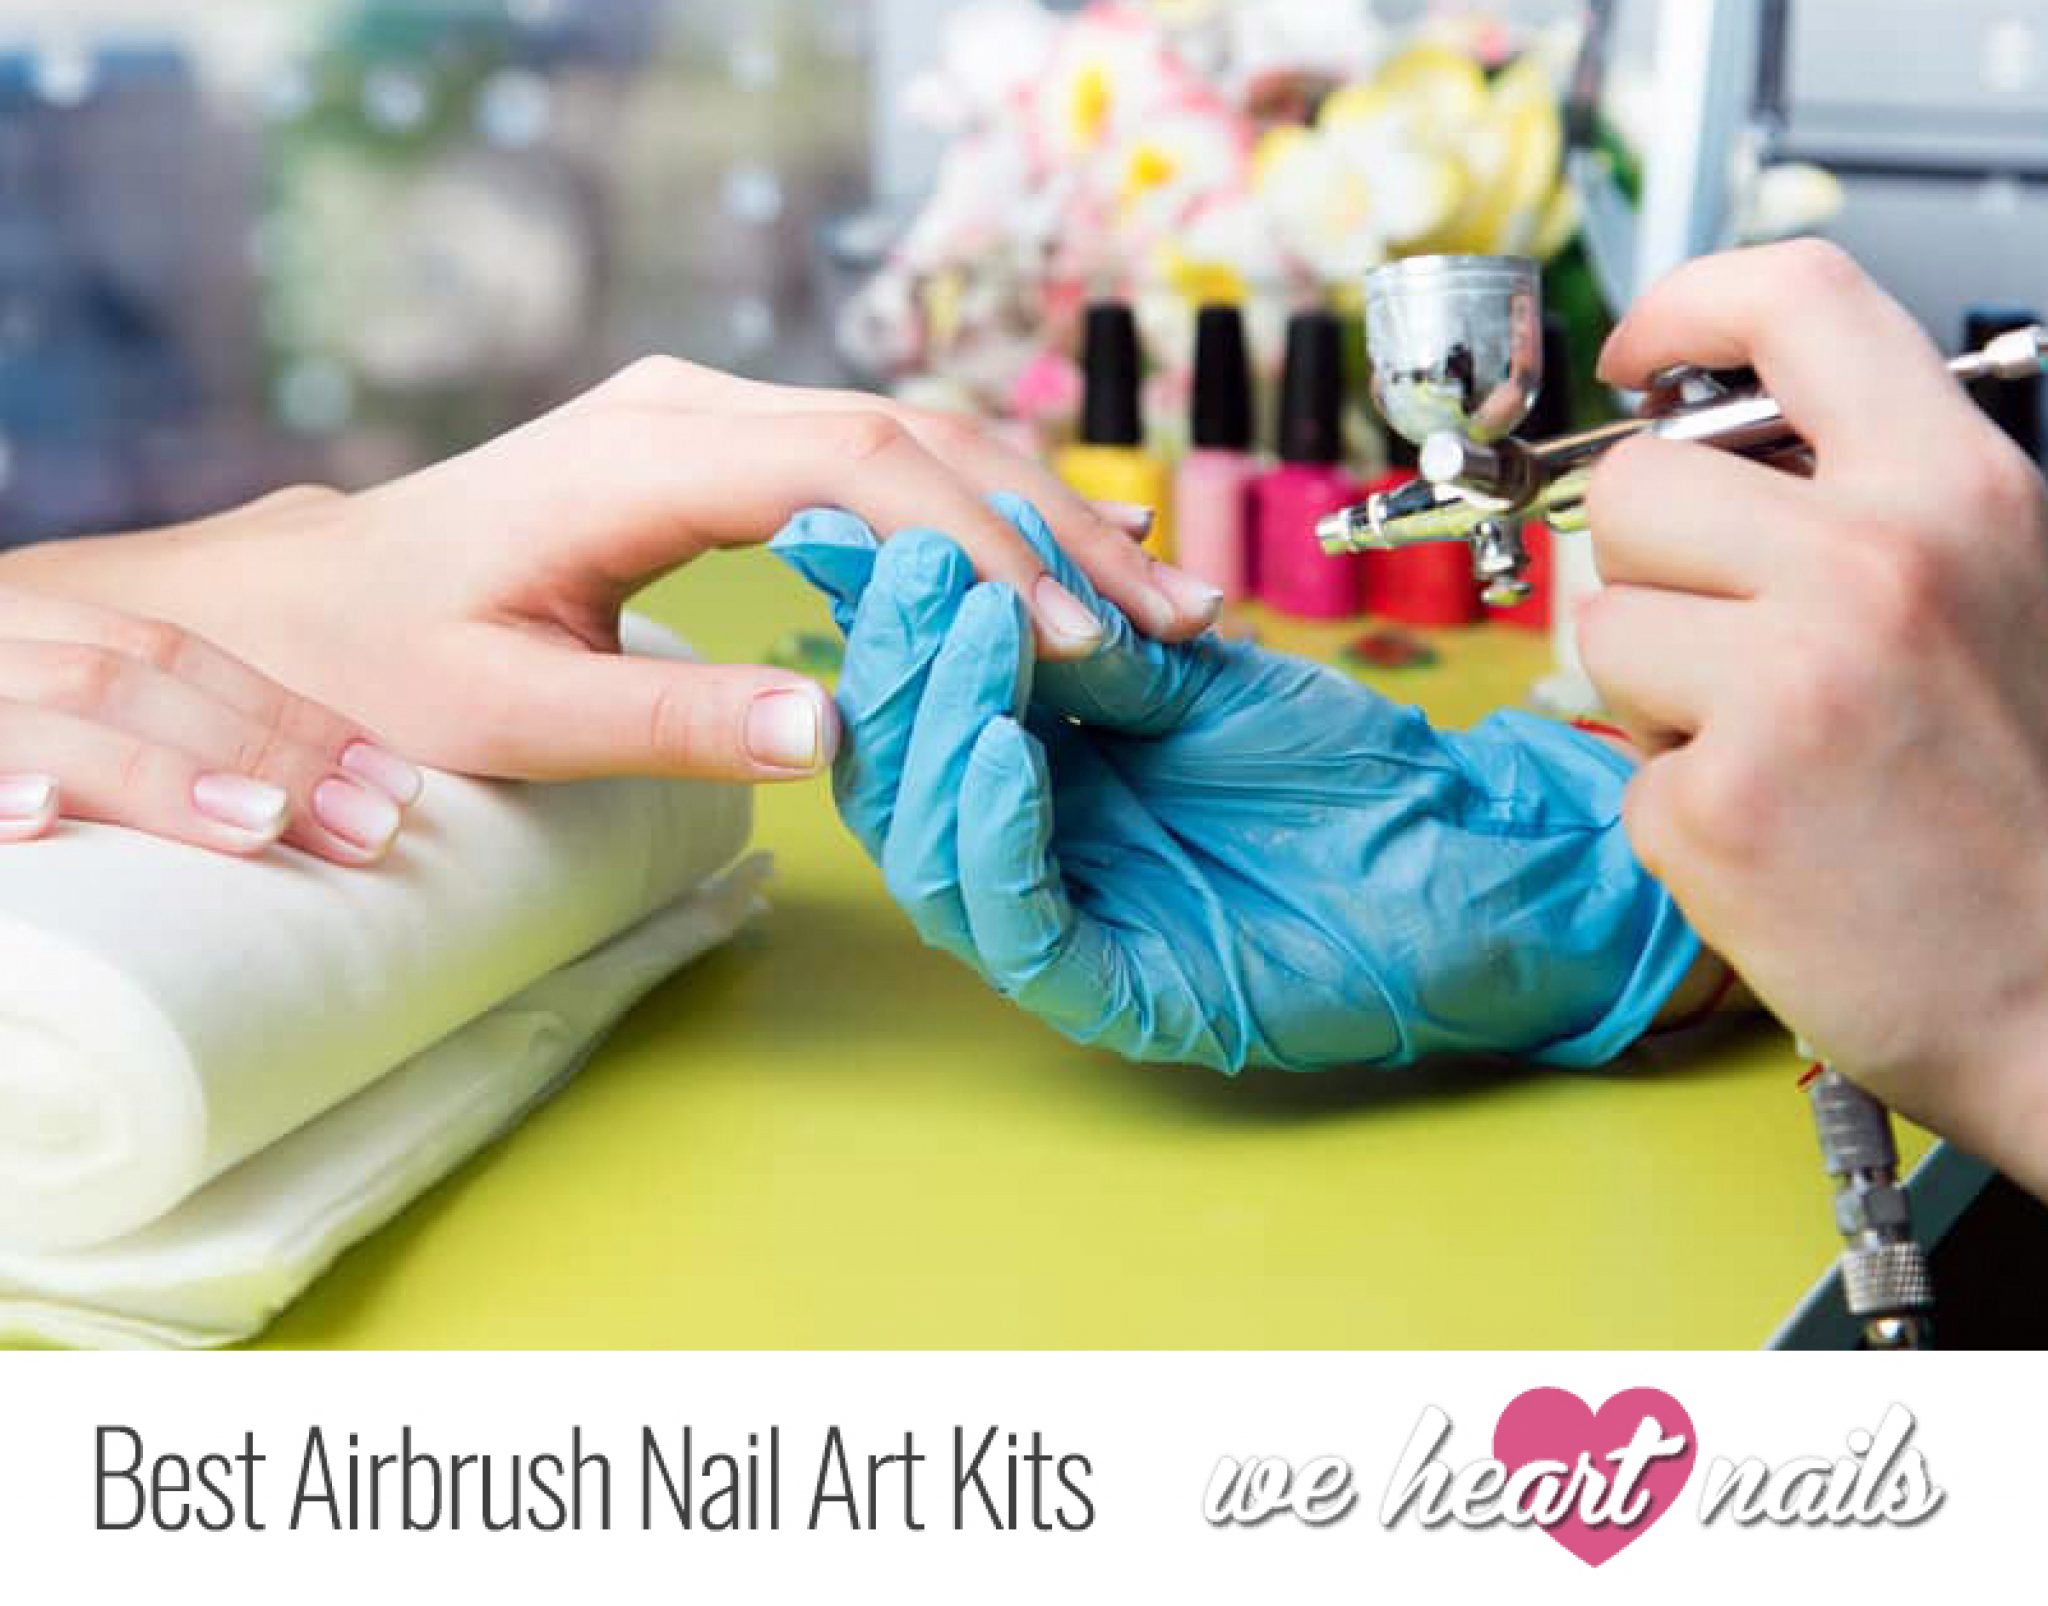 3. Airbrush Nail Art Ideas - wide 2